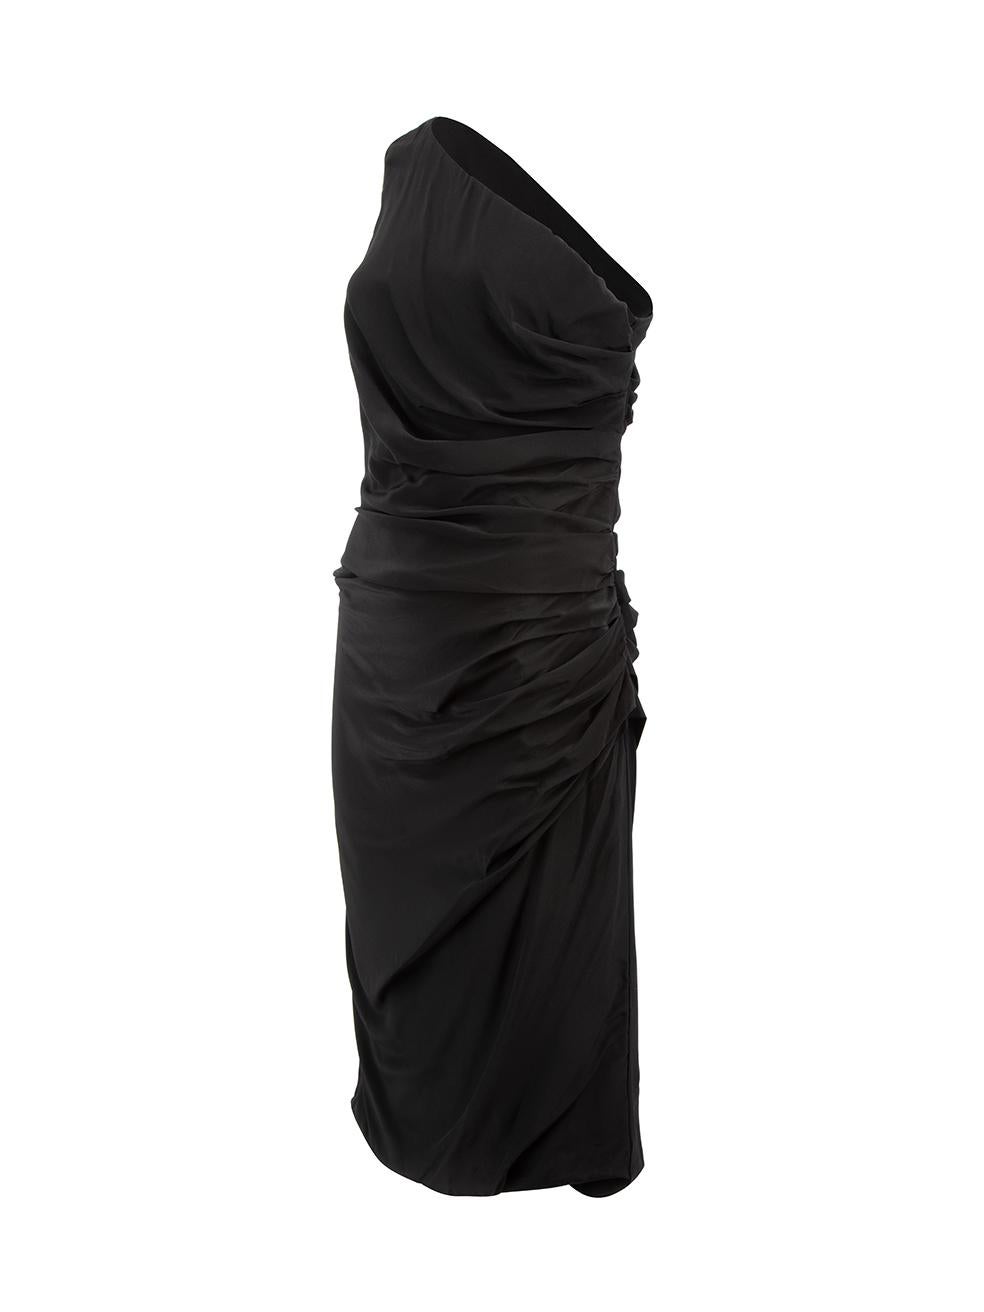 Women's Sportmax Black One-Shoulder Ruffle Dress Size L